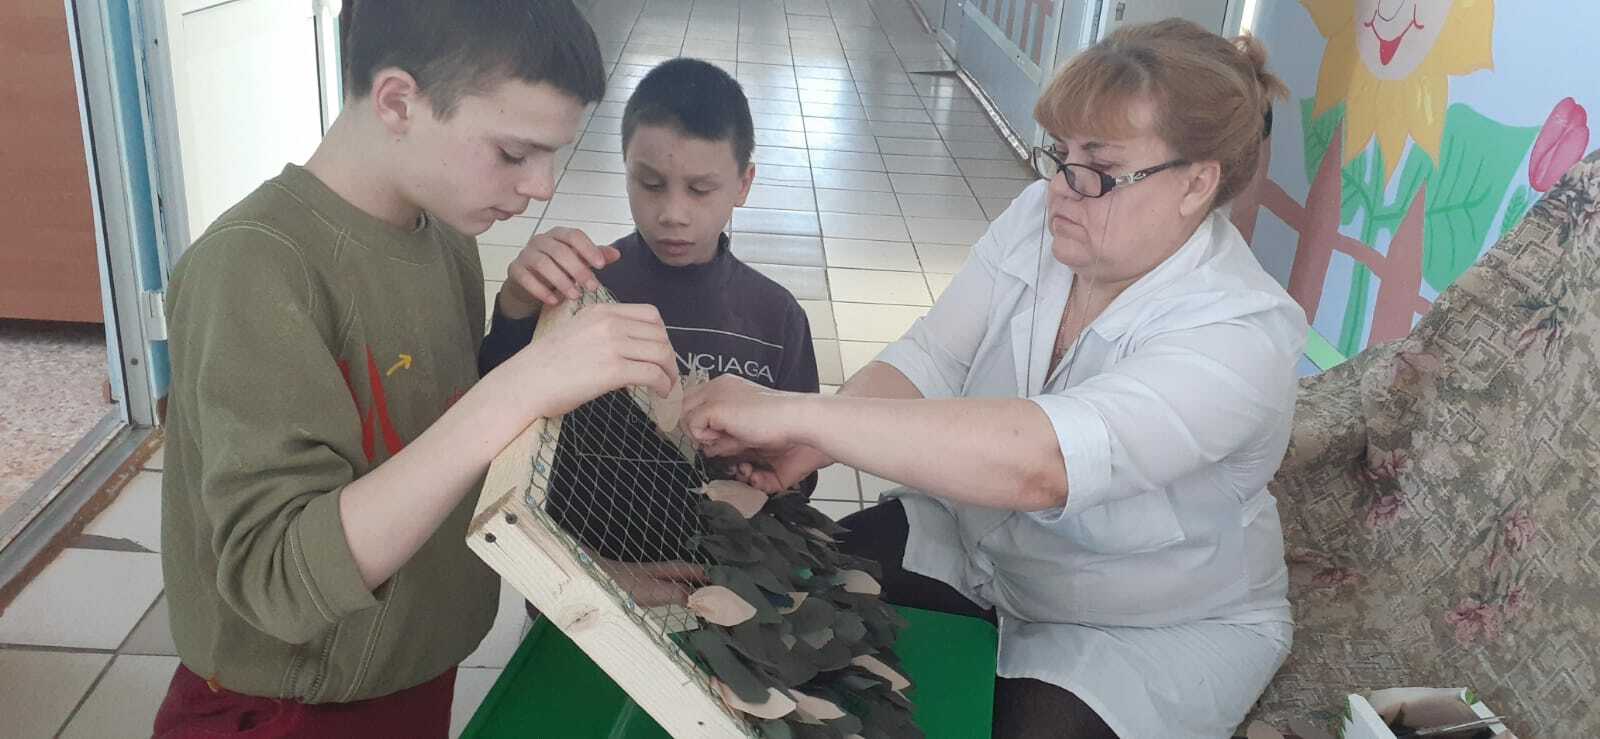 В Башкирии воспитанники детского дома-интерната плетут маскировку для бойцов